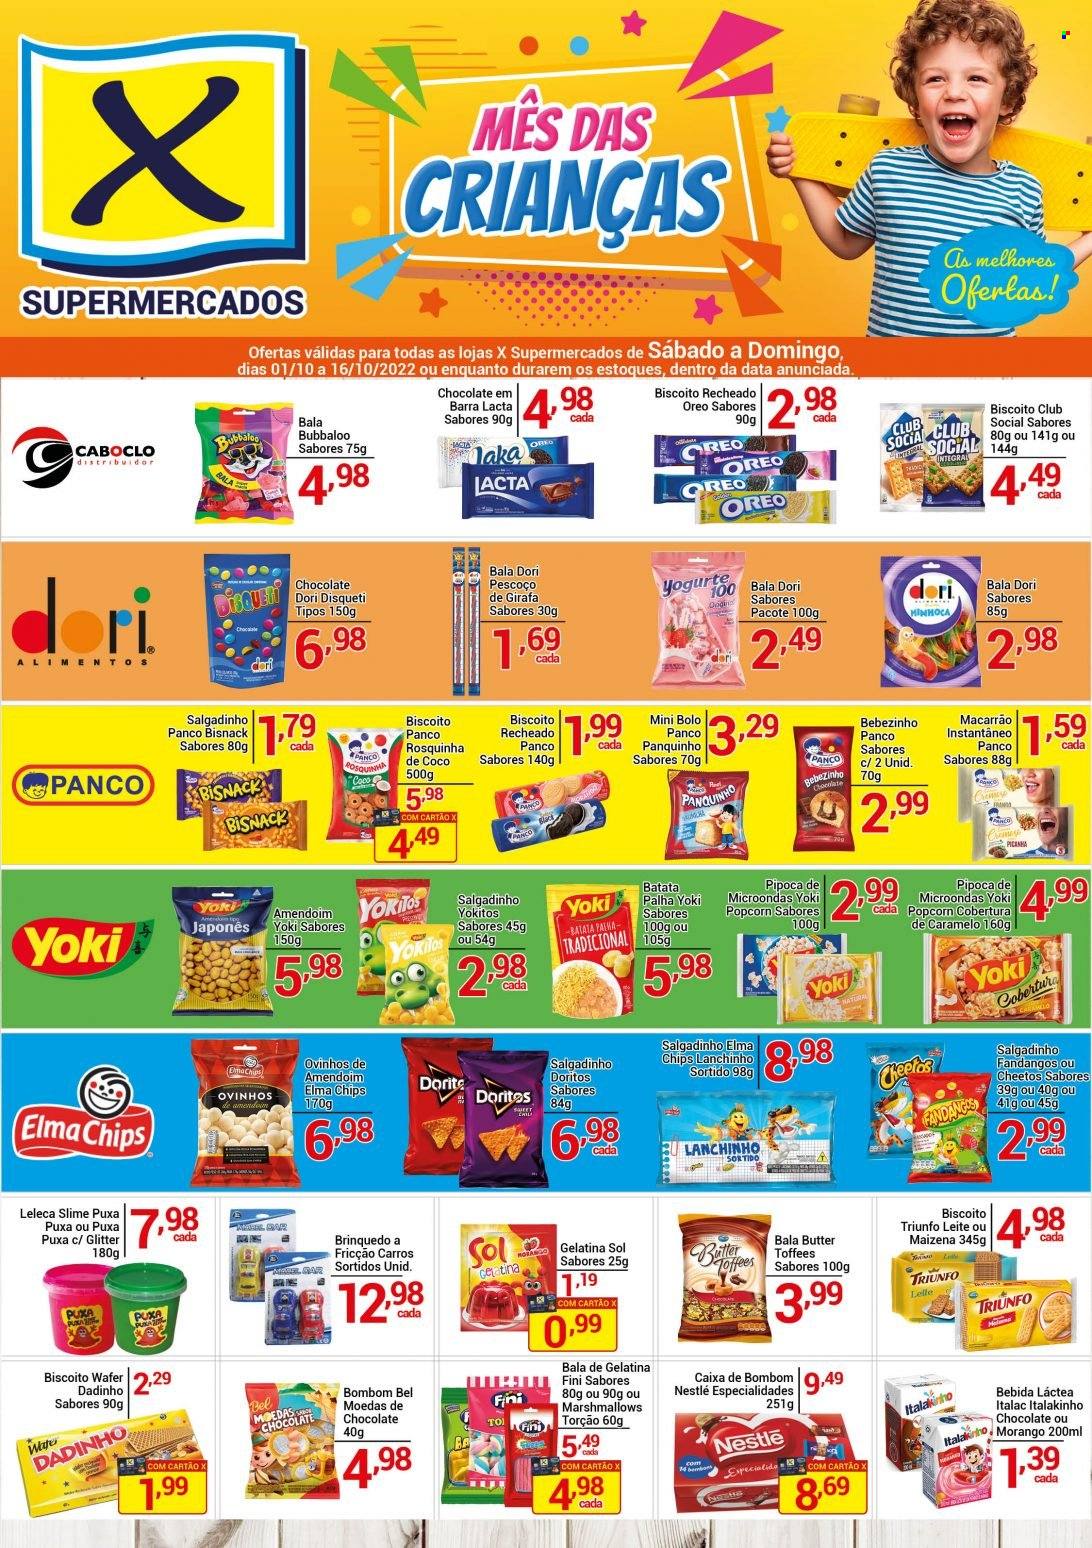 Encarte X Supermercados  - 01.10.2022 - 16.10.2022.